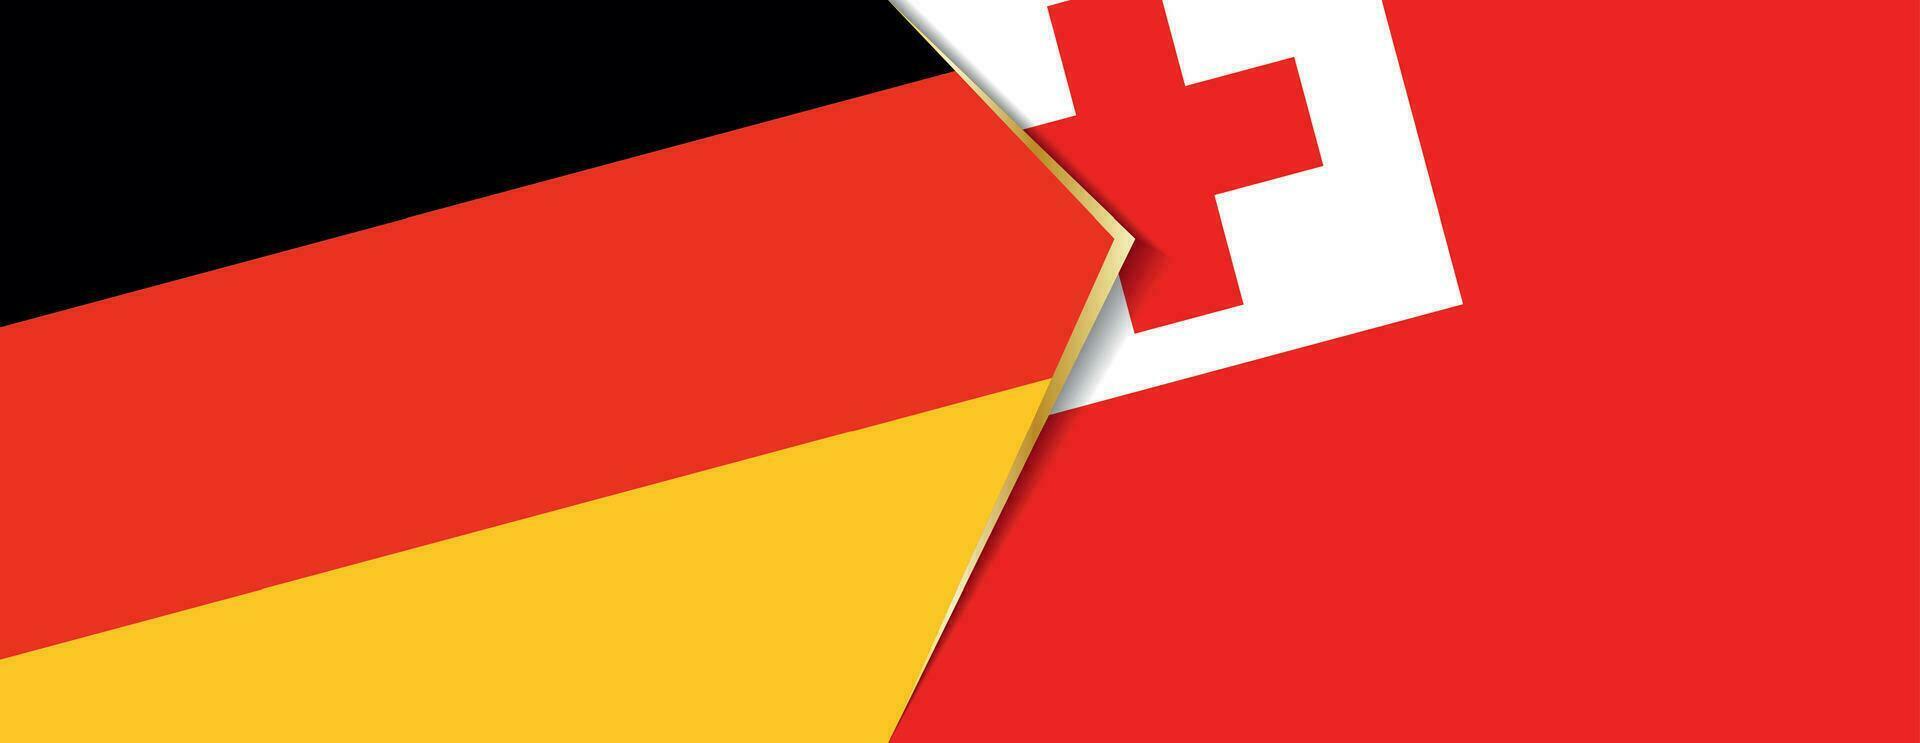 Deutschland und Tonga Flaggen, zwei Vektor Flaggen.